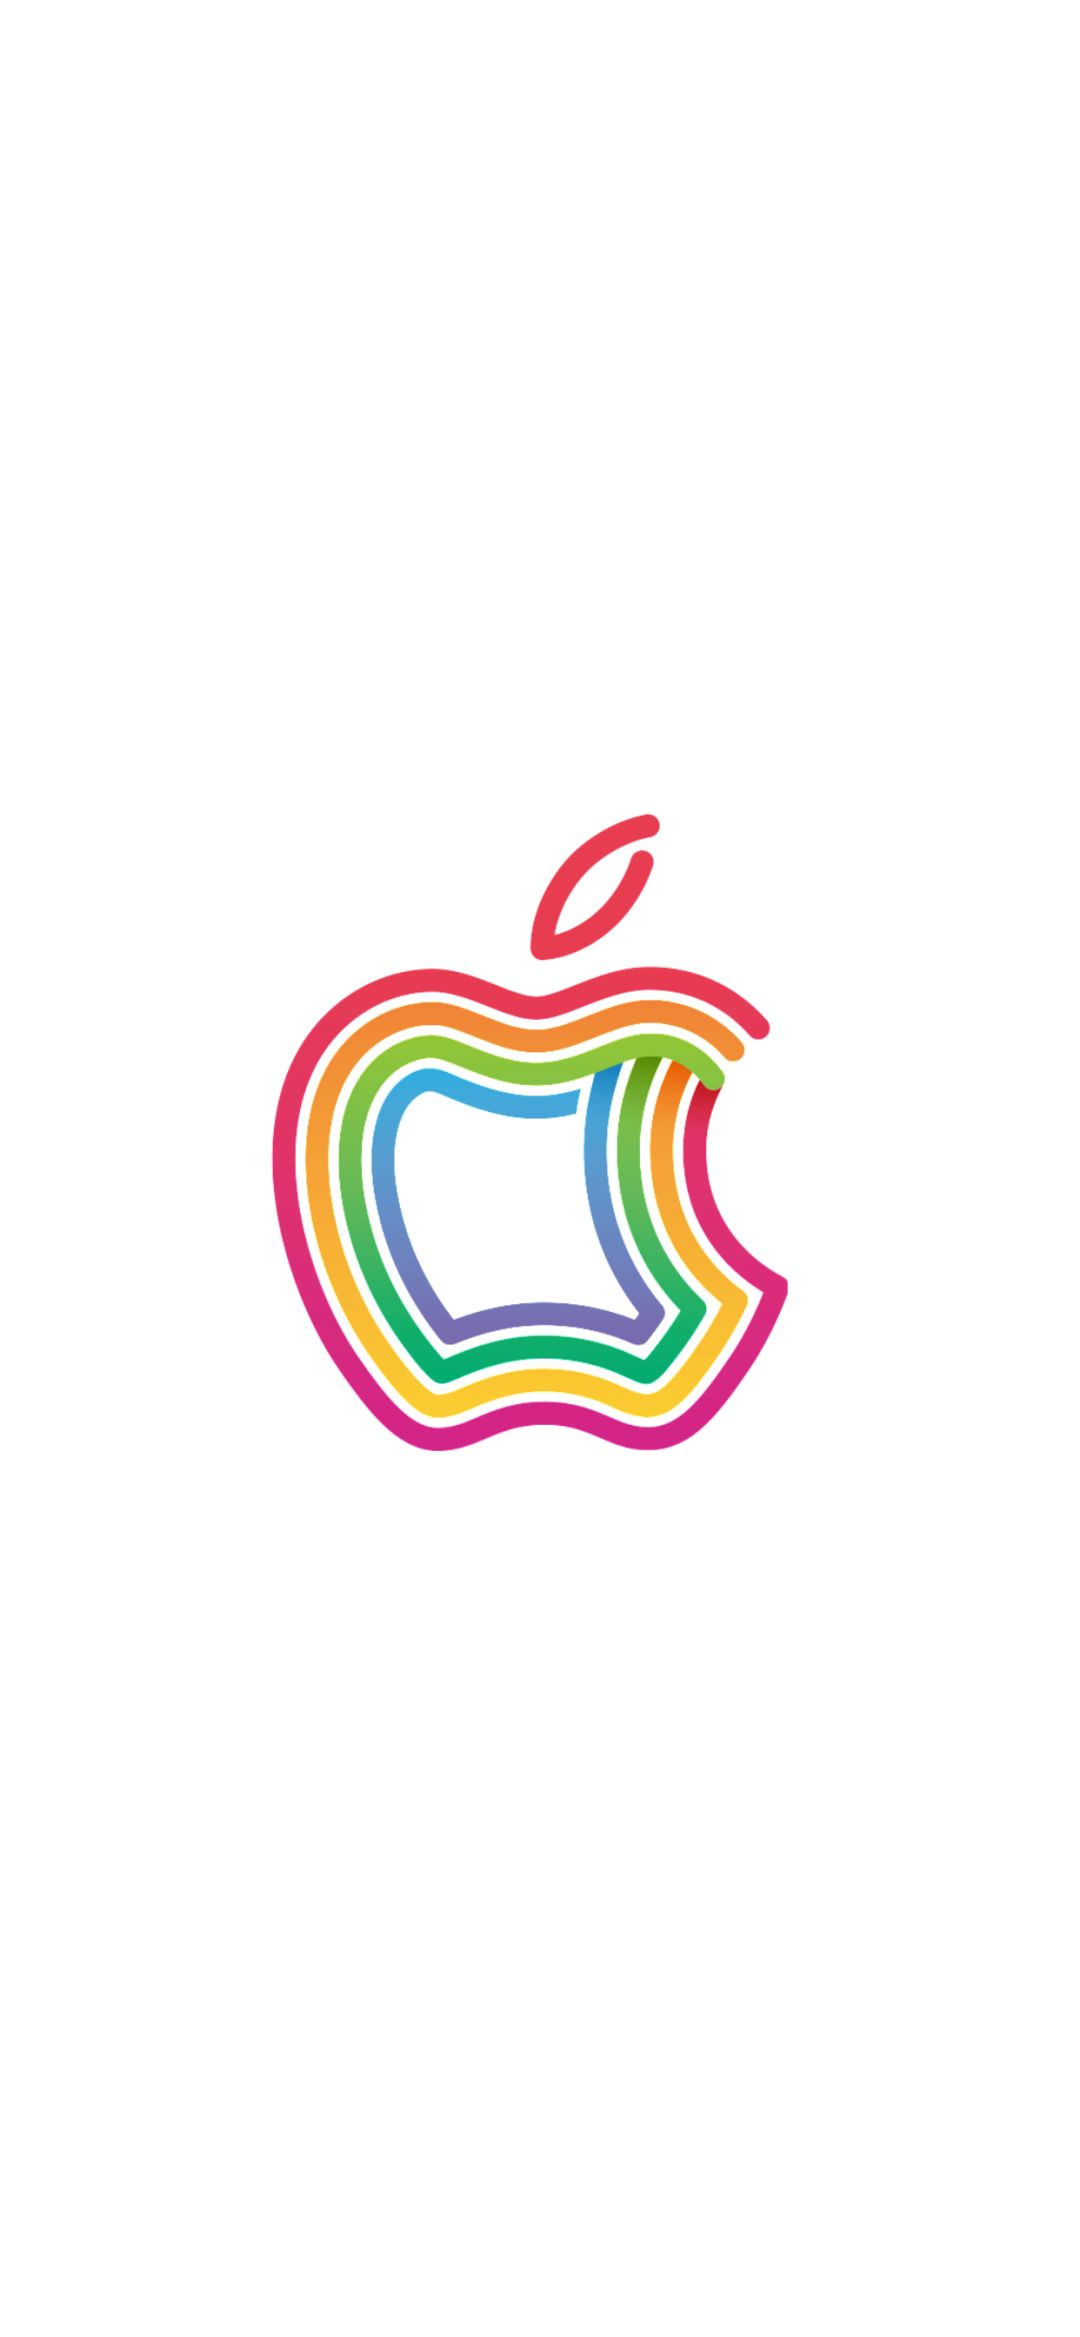 苹果logo原图_壁纸 | 新苹果 LOGO 壁纸 (https://mushiming.com/)  第3张